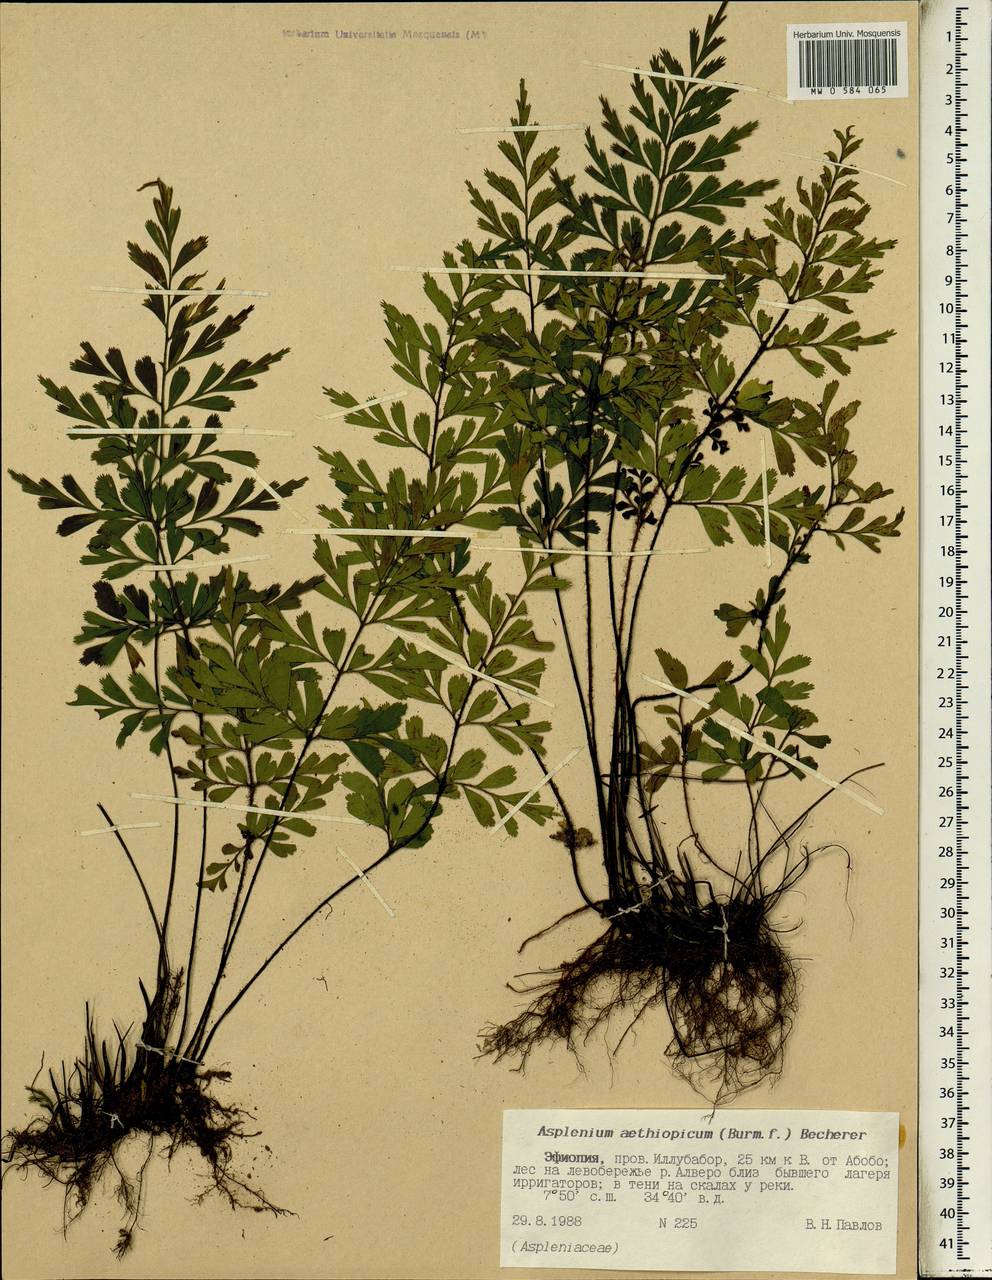 Asplenium aethiopicum, Africa (AFR) (Ethiopia)